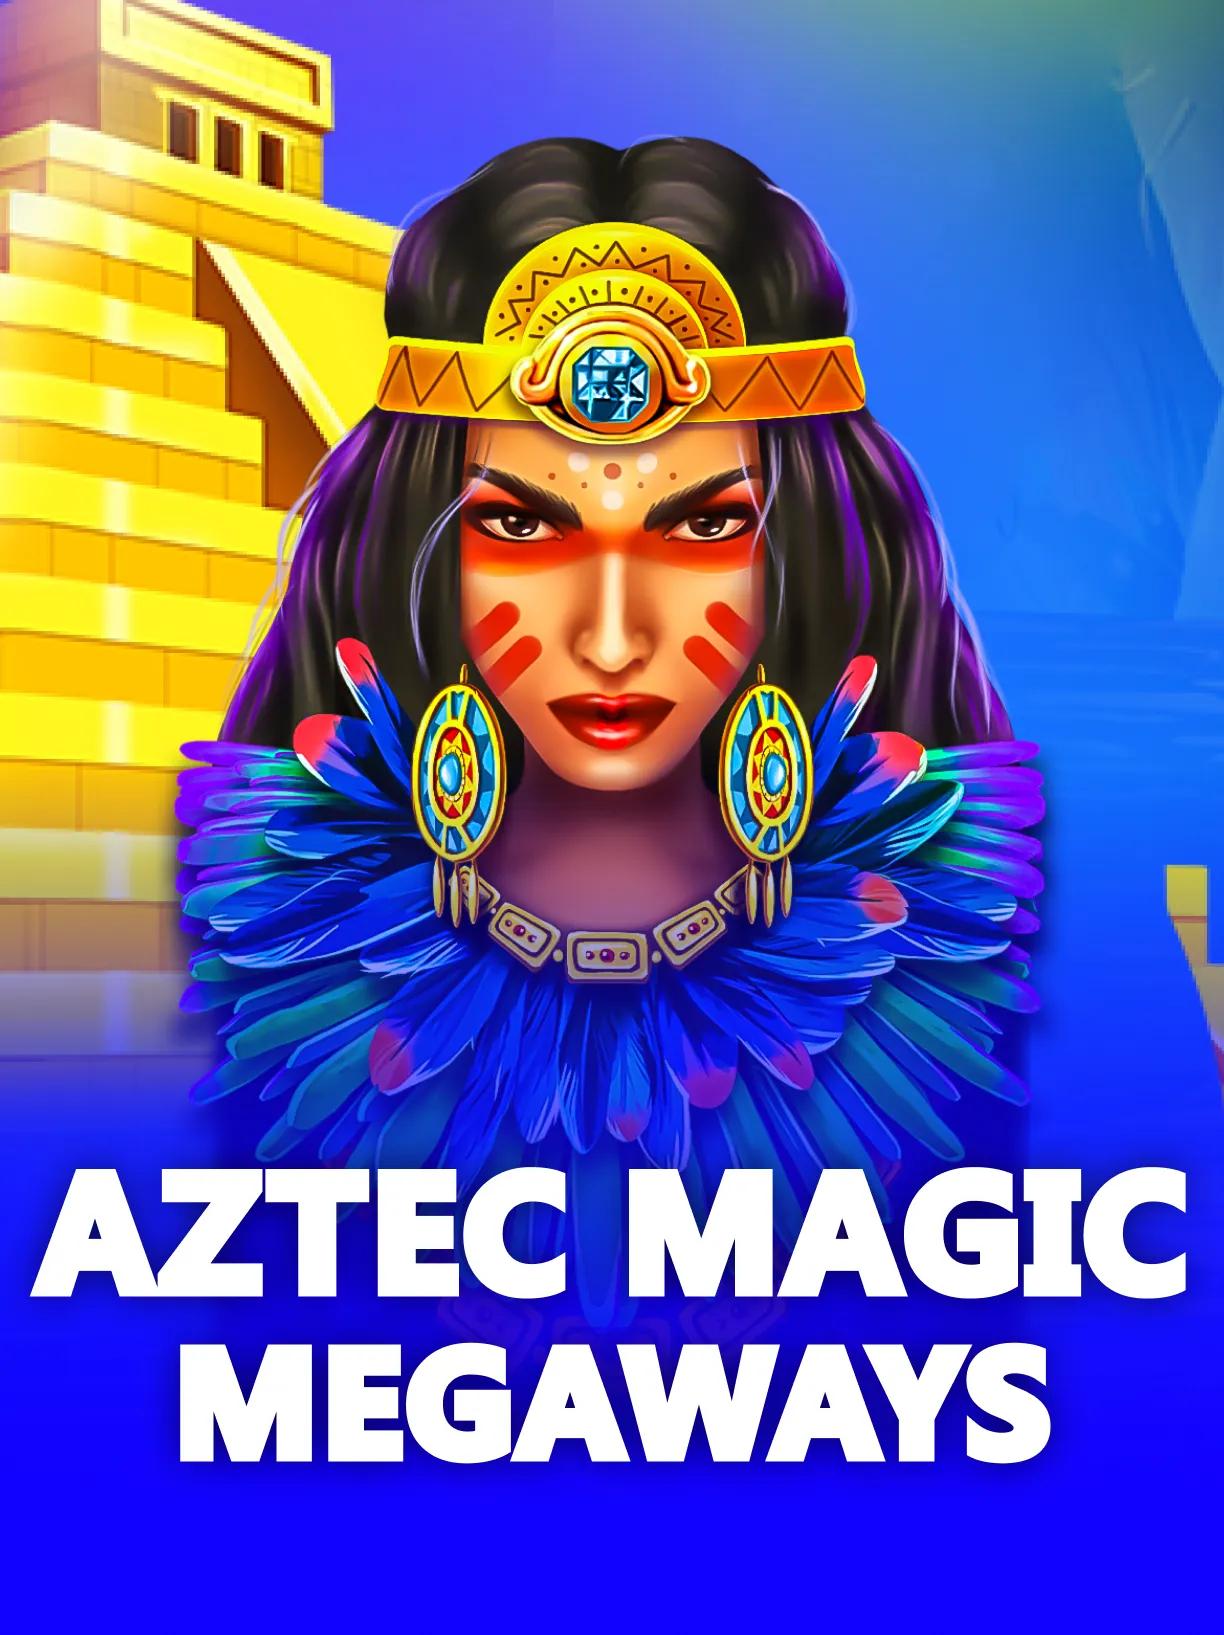 Aztec_Magic_Megaways_square.webp